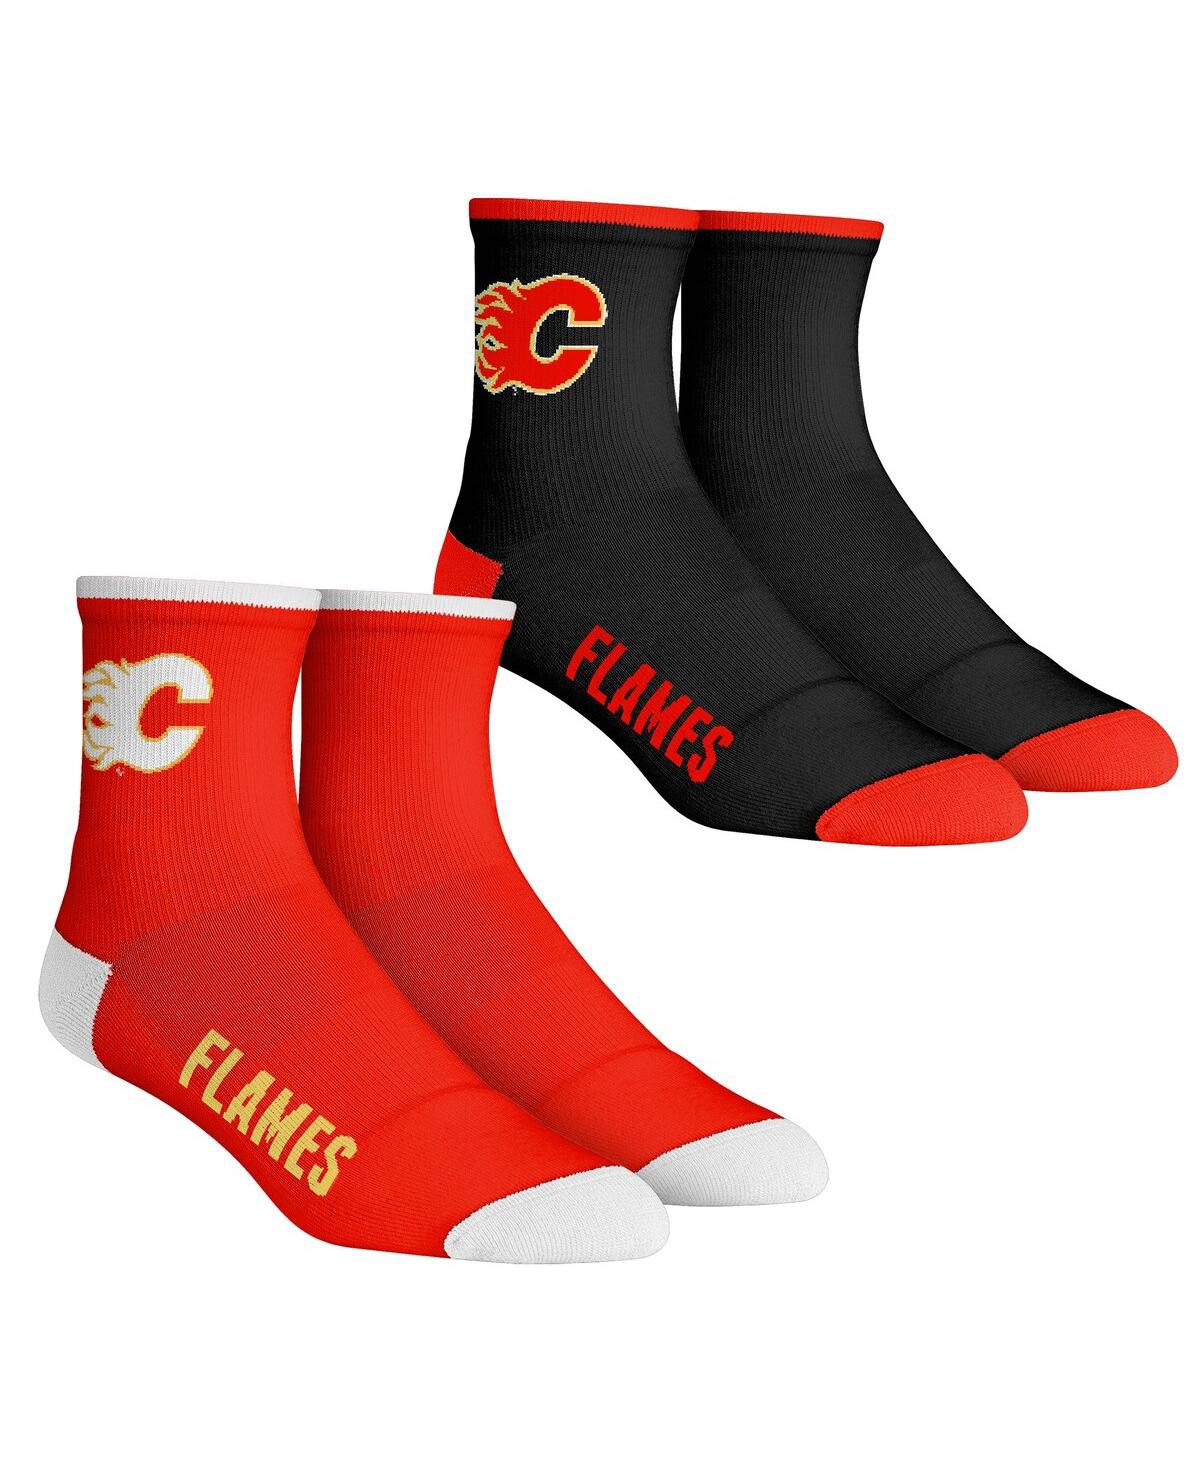 Rock 'em Men's  Socks Calgary Flames Core Team 2-pack Quarter Length Sock Set In Black,red